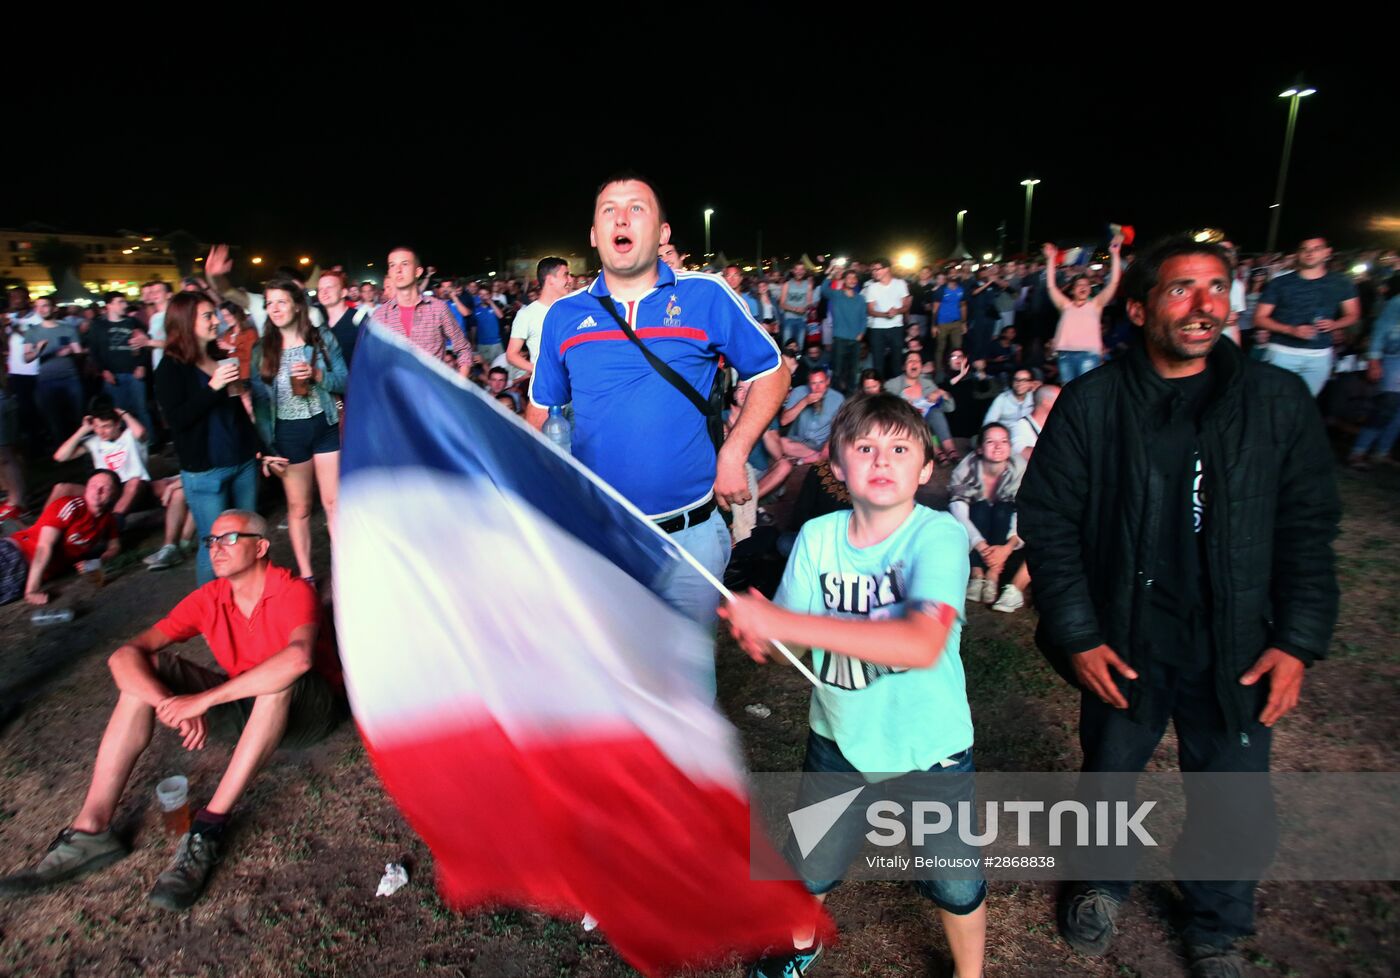 UEFA Euro 2016 opening match broadcast in fan zones across France